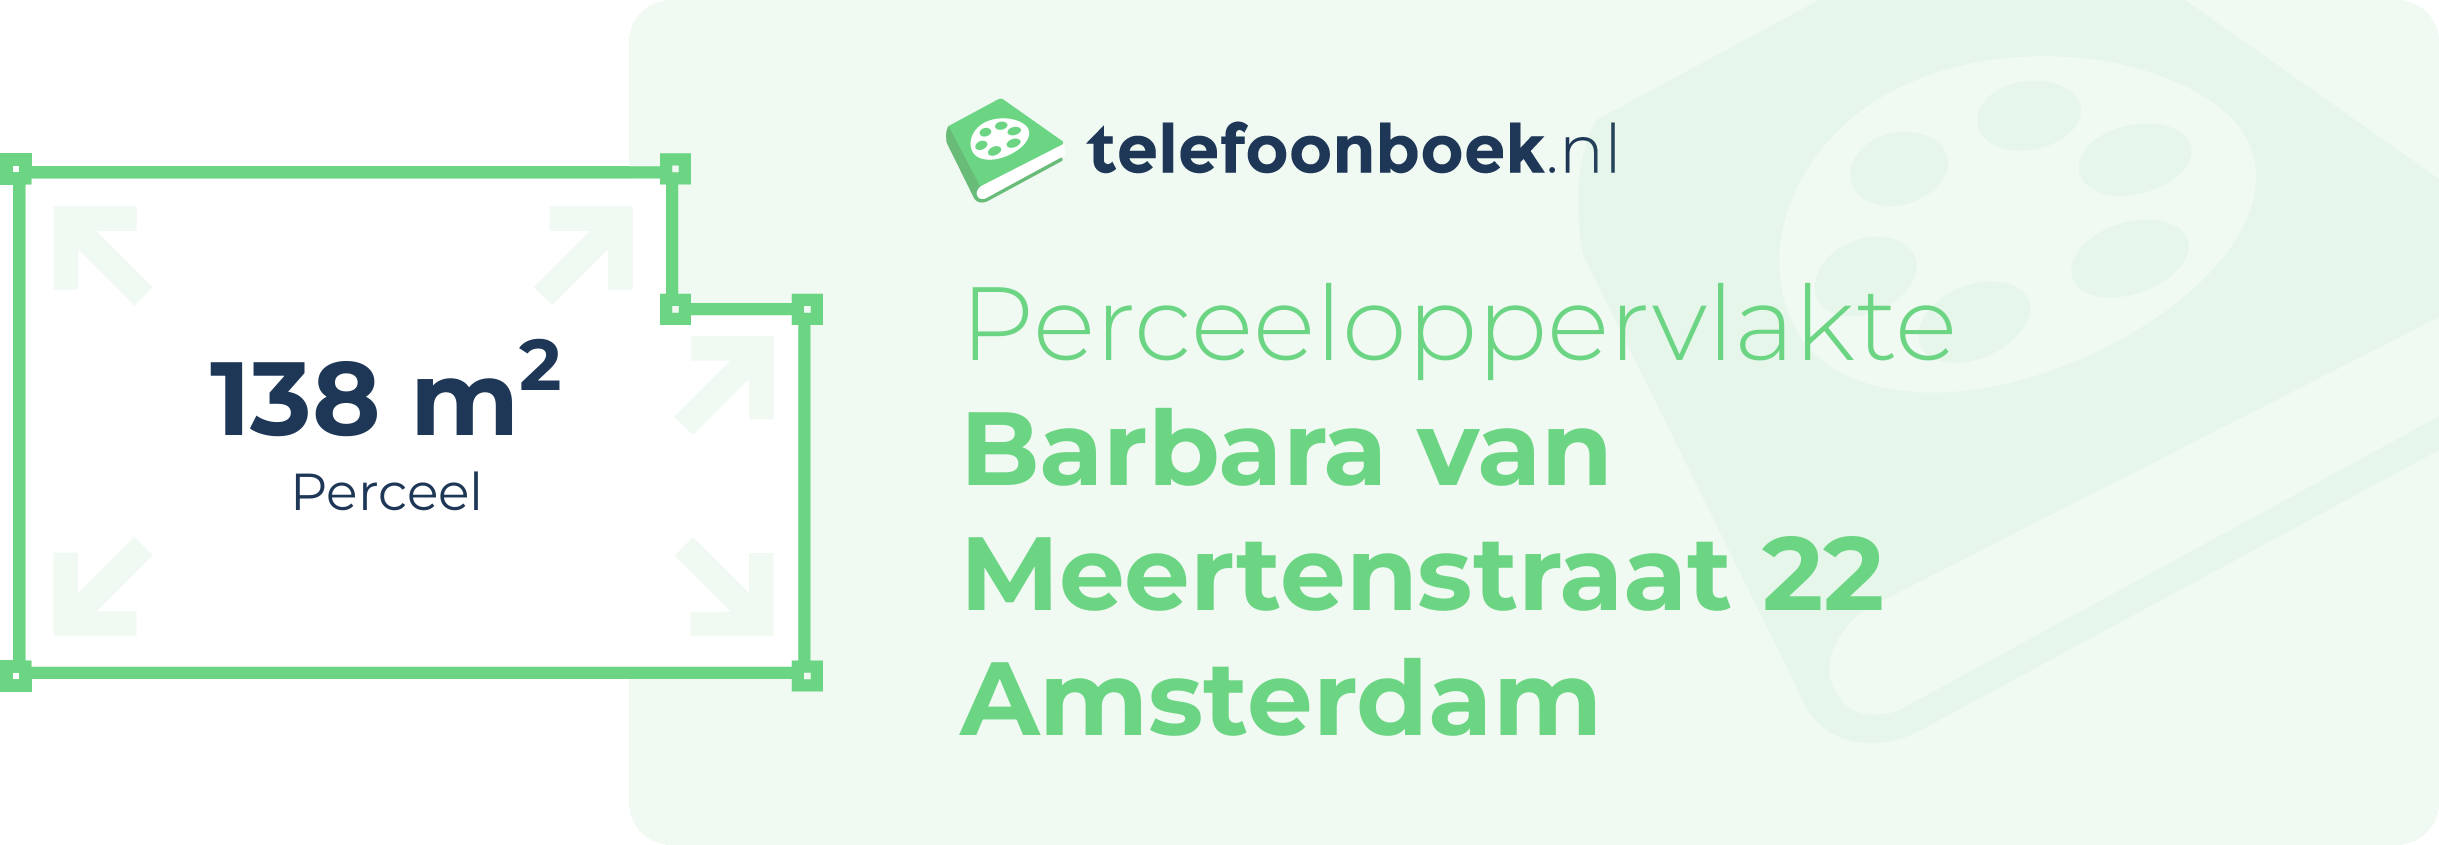 Perceeloppervlakte Barbara Van Meertenstraat 22 Amsterdam